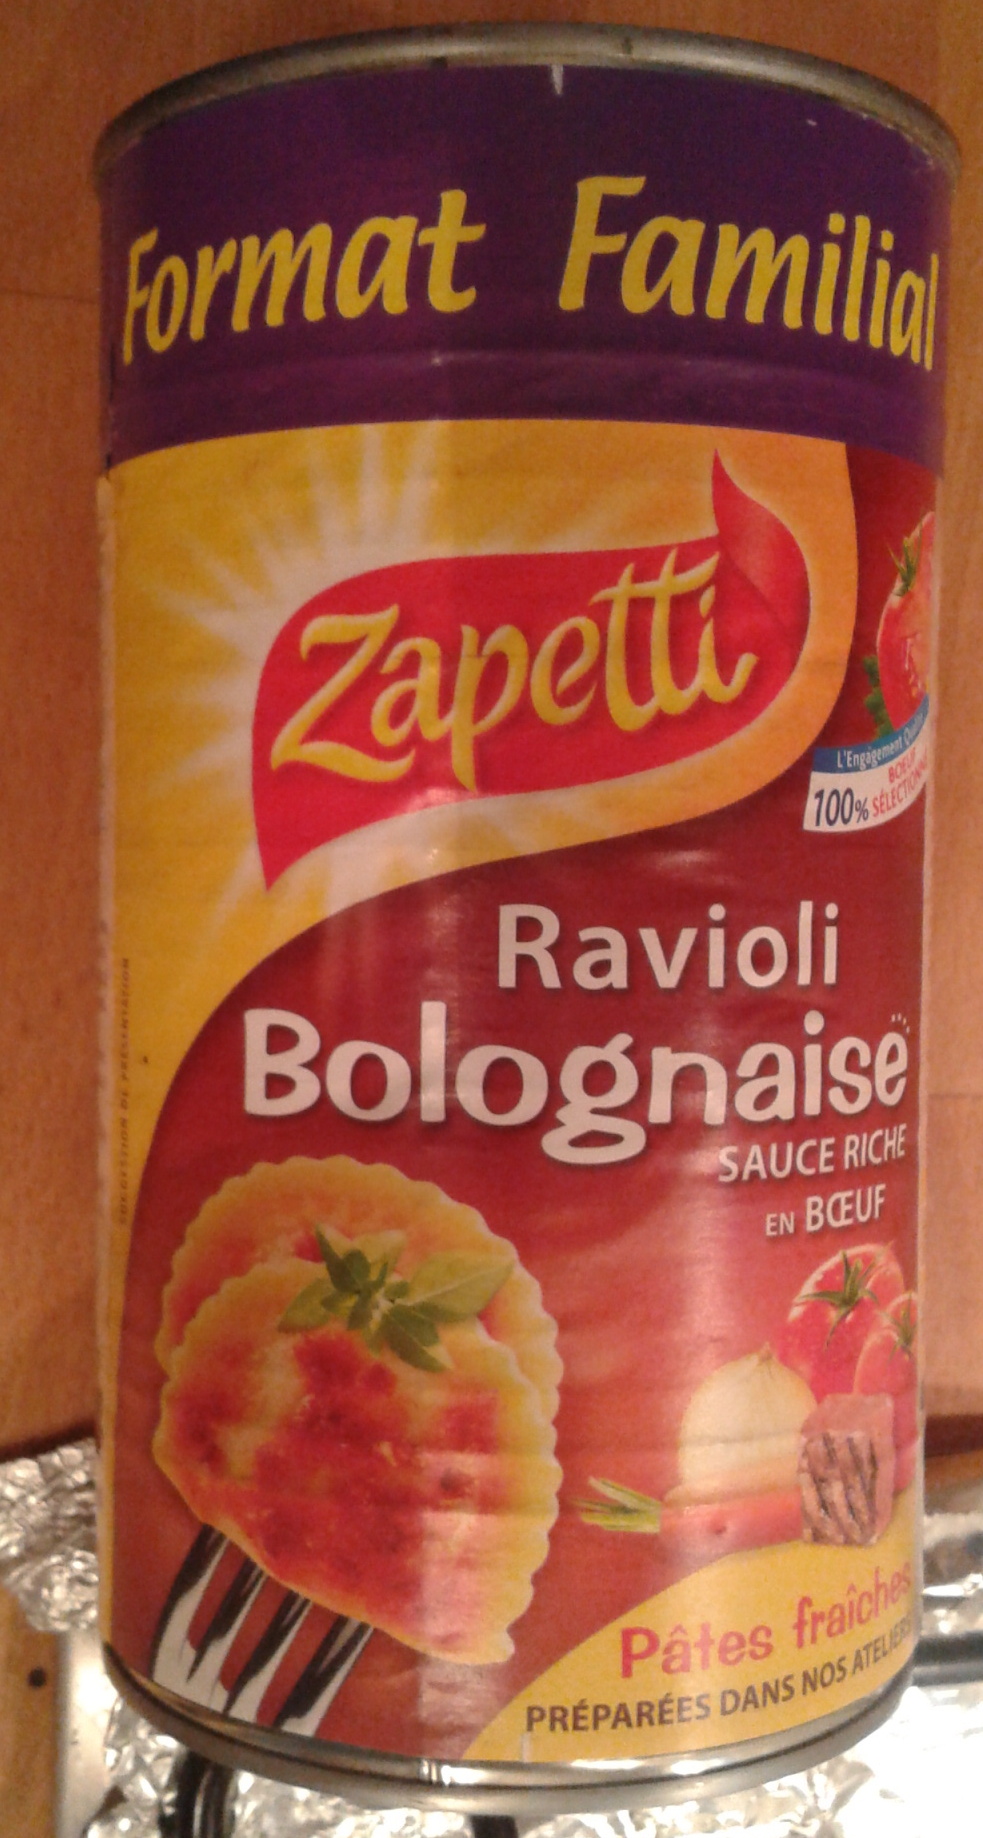 Ravioli Bolognaise (Sauce Riche en Bœuf) Format Familial - Product - fr